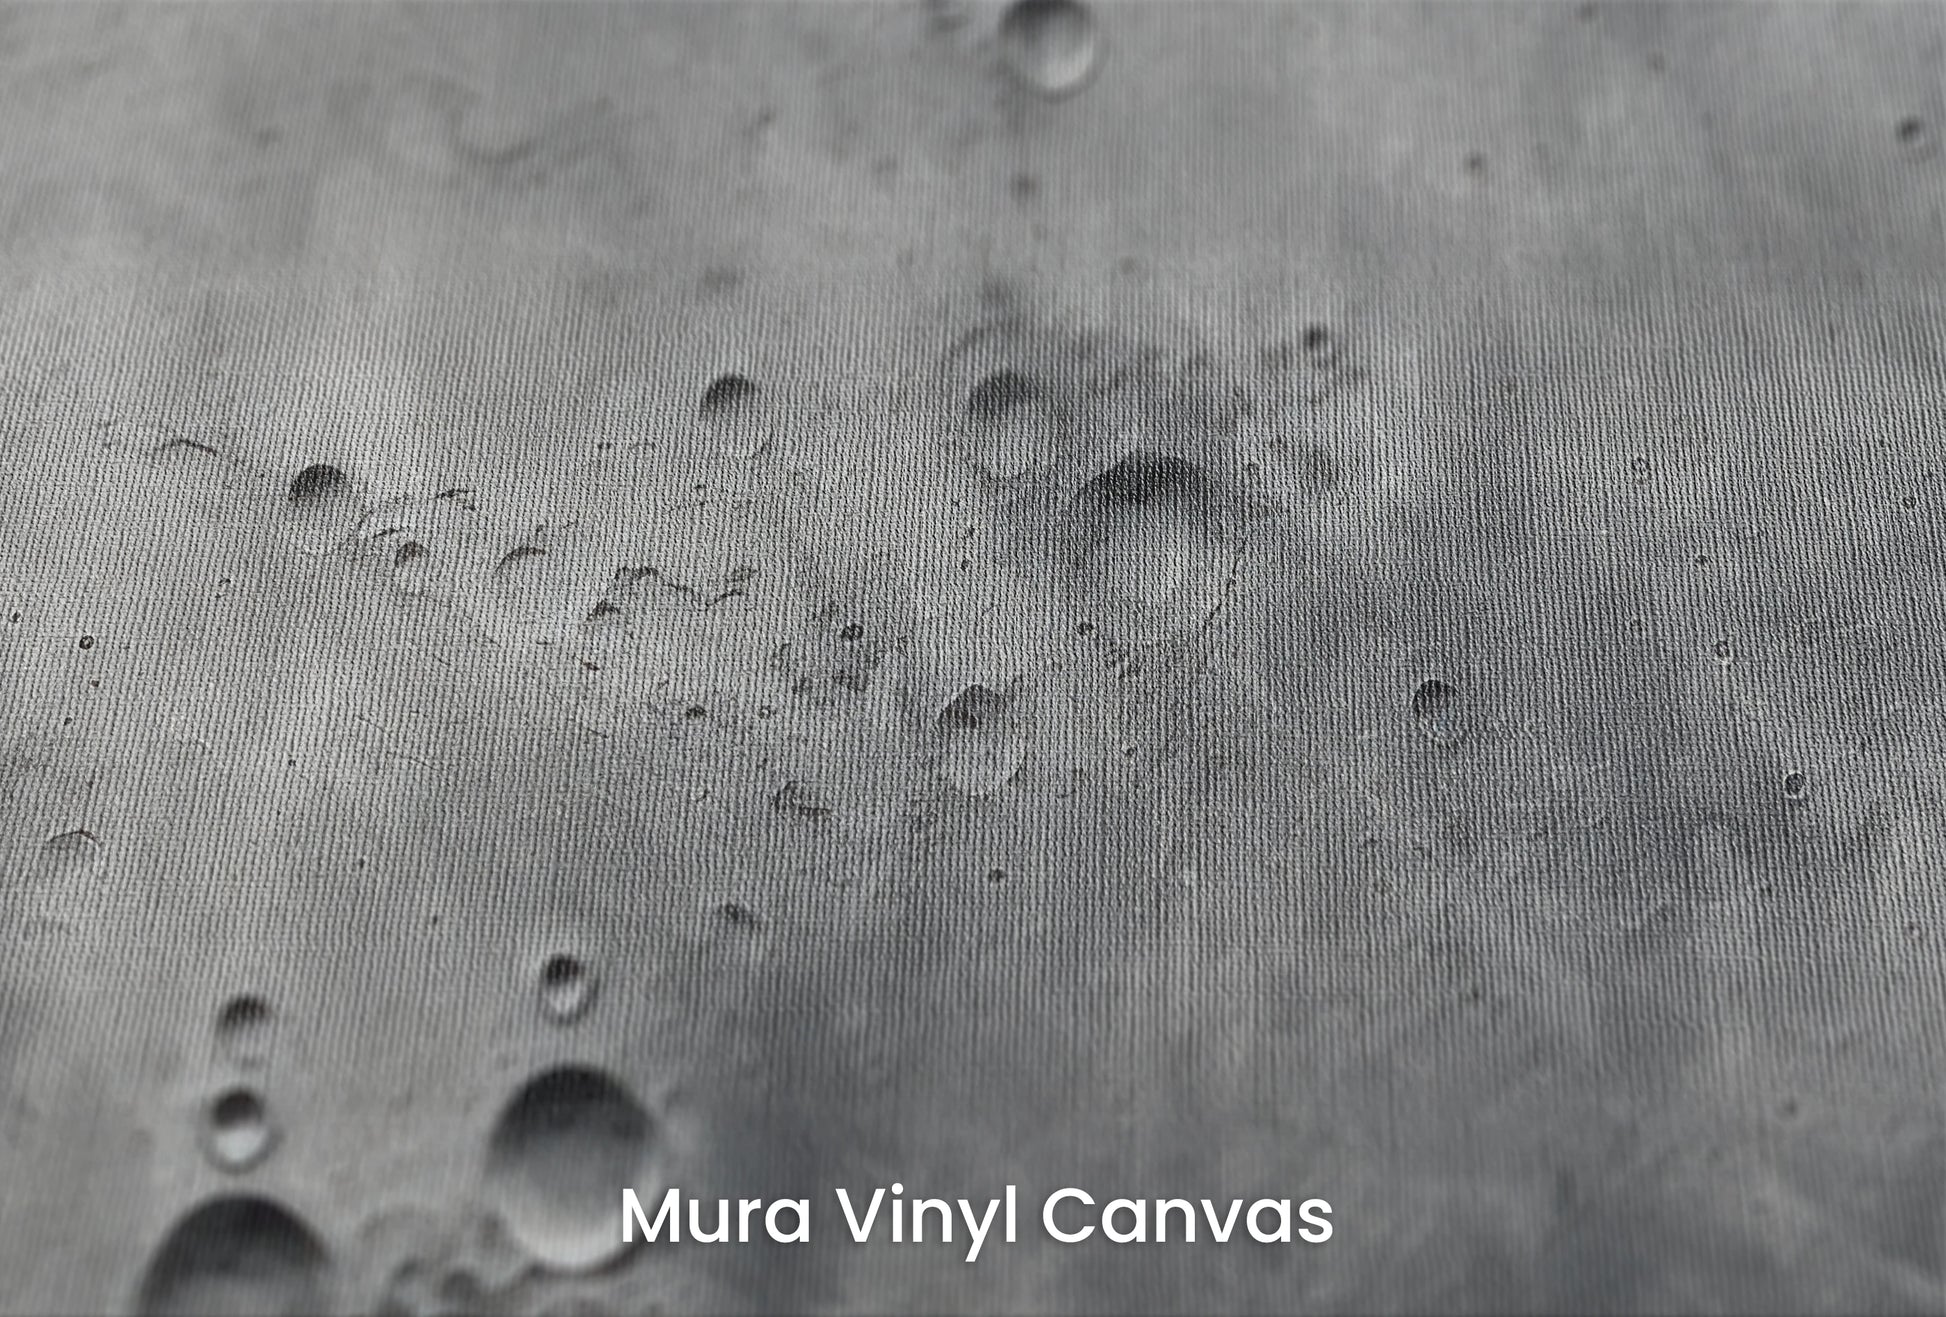 Zbliżenie na artystyczną fototapetę o nazwie Lunar Surface na podłożu Mura Vinyl Canvas - faktura naturalnego płótna.